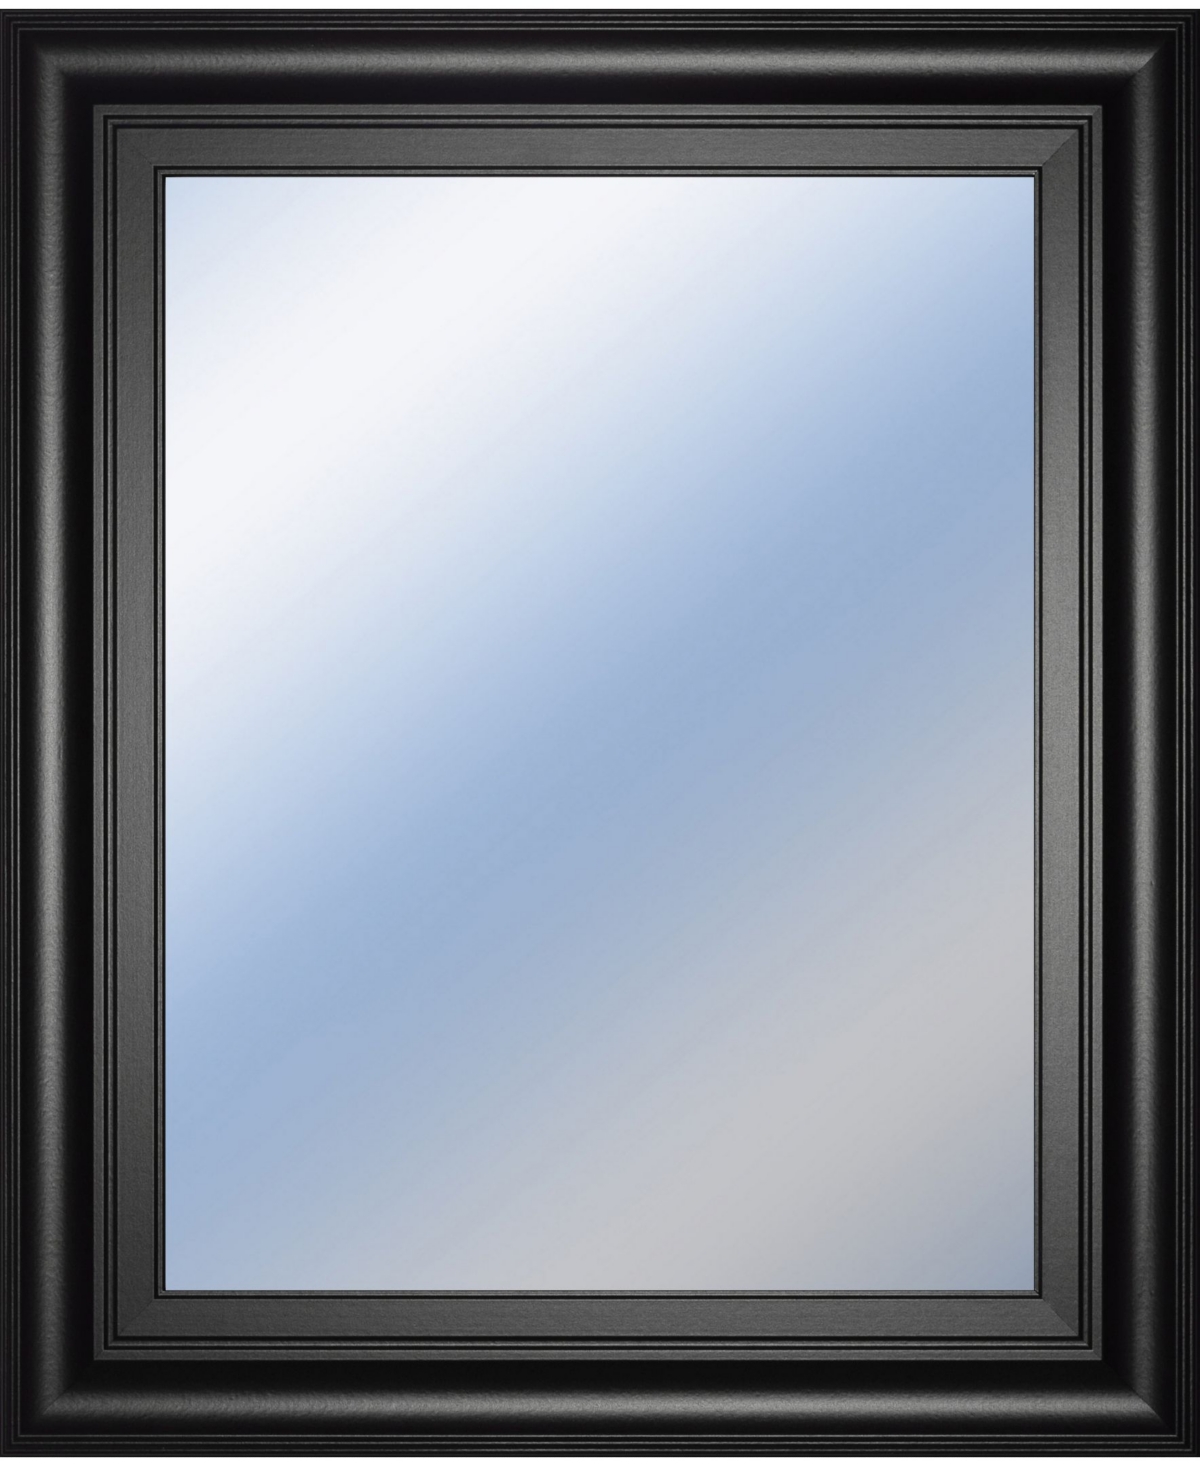 Decorative Framed Wall Mirror, 22" x 26" - Silver